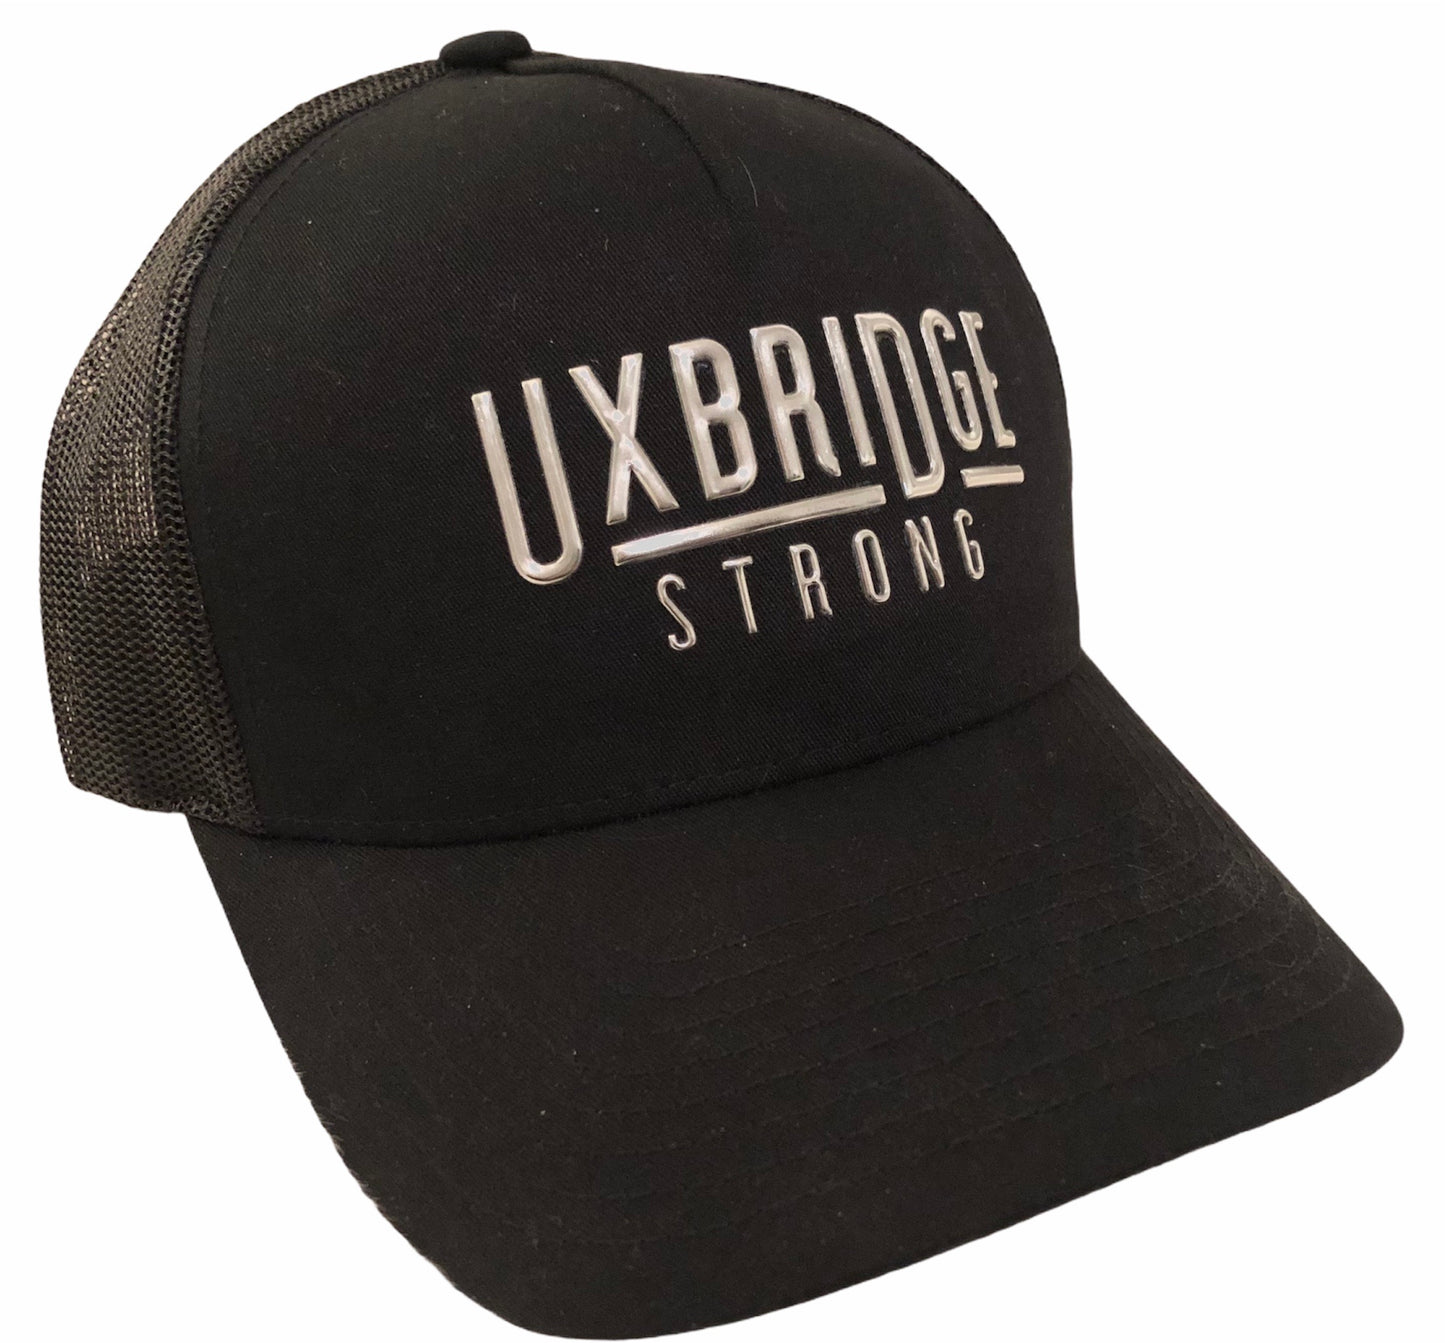 Uxbridge Strong Trucker Cap